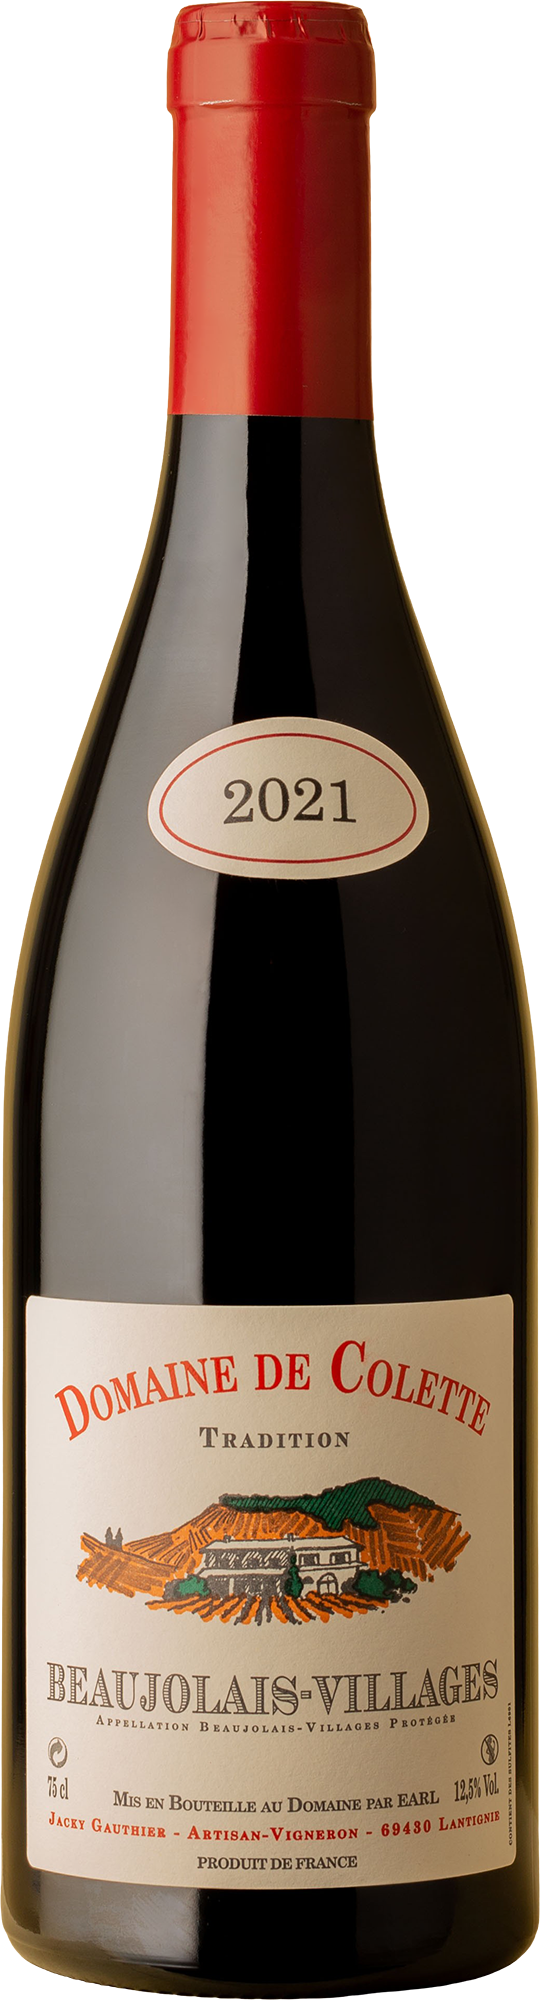 Domaine de Colette - Beaujolais-Villages 'Tradition' 2021 Red Wine